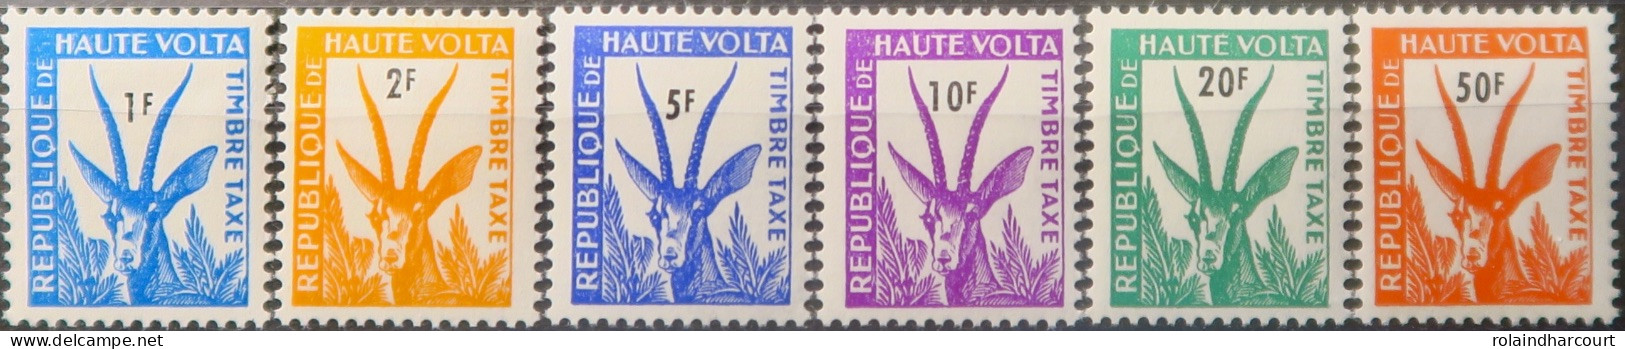 R2253/710 - HAUTE VOLTA - 1962 - TIMBRES TAXE - SERIE COMPLETE - N°21 à 26 NEUFS* - Haute-Volta (1958-1984)